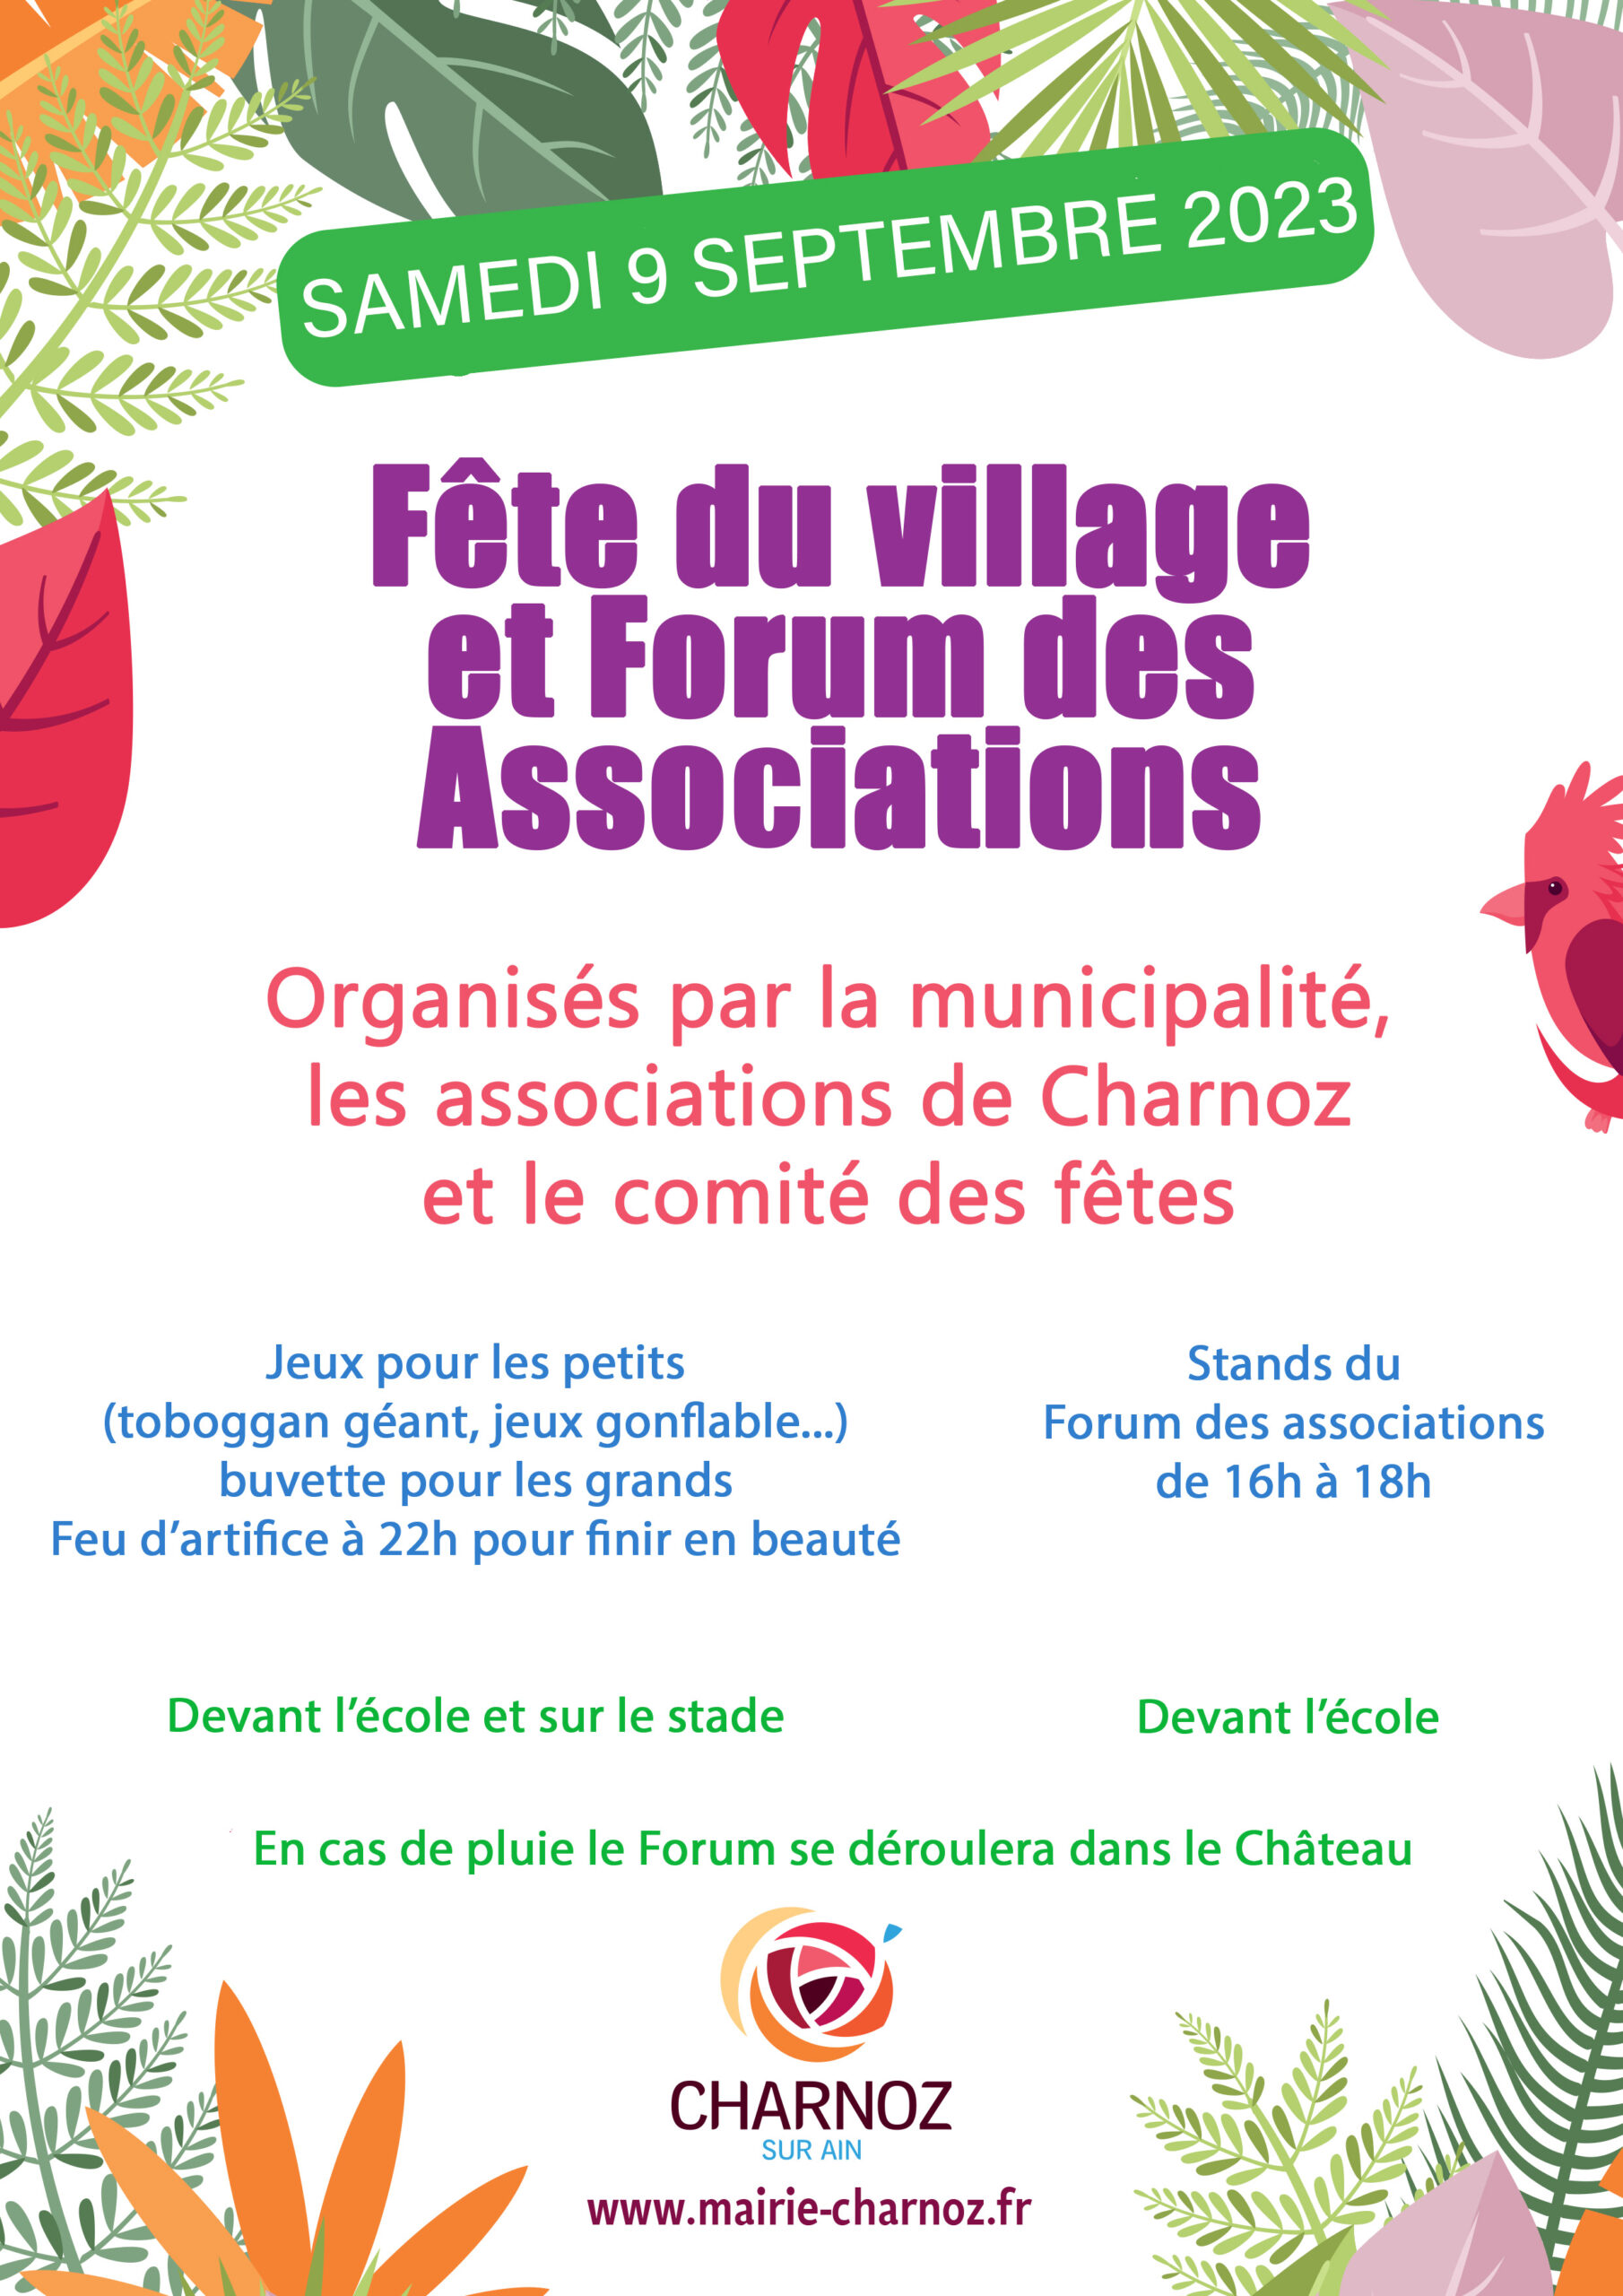 Fête du Village et Forum des associations 09 septembre 2023